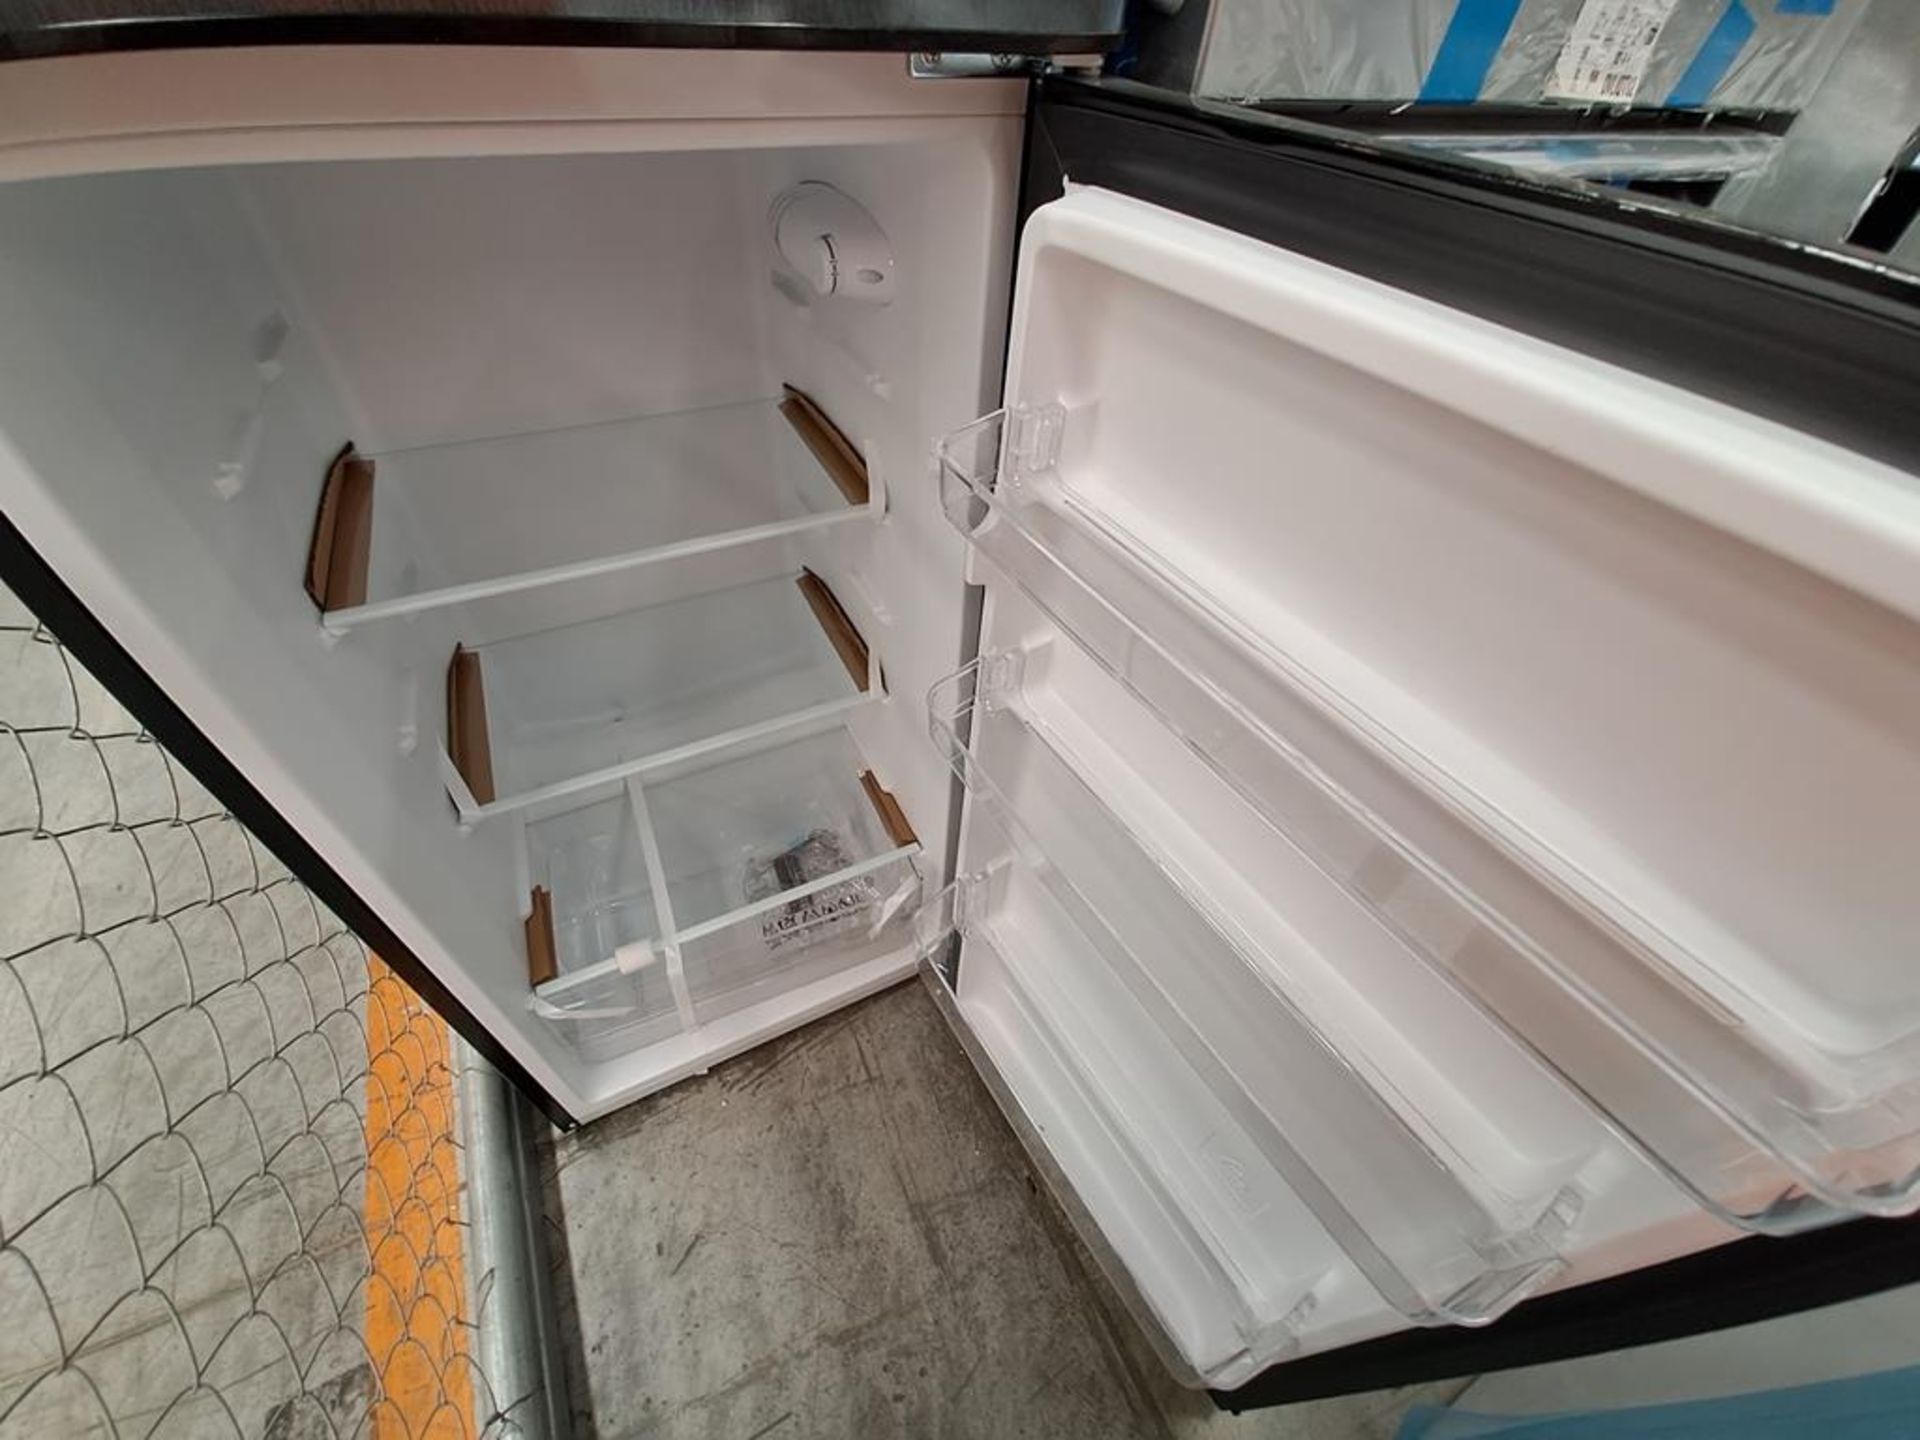 (Equipo nuevo) Lote de 2 refrigeradores contiene: 1 refrigerador Marca WHIRLPOOL, Modelo WT1231D, S - Image 8 of 9